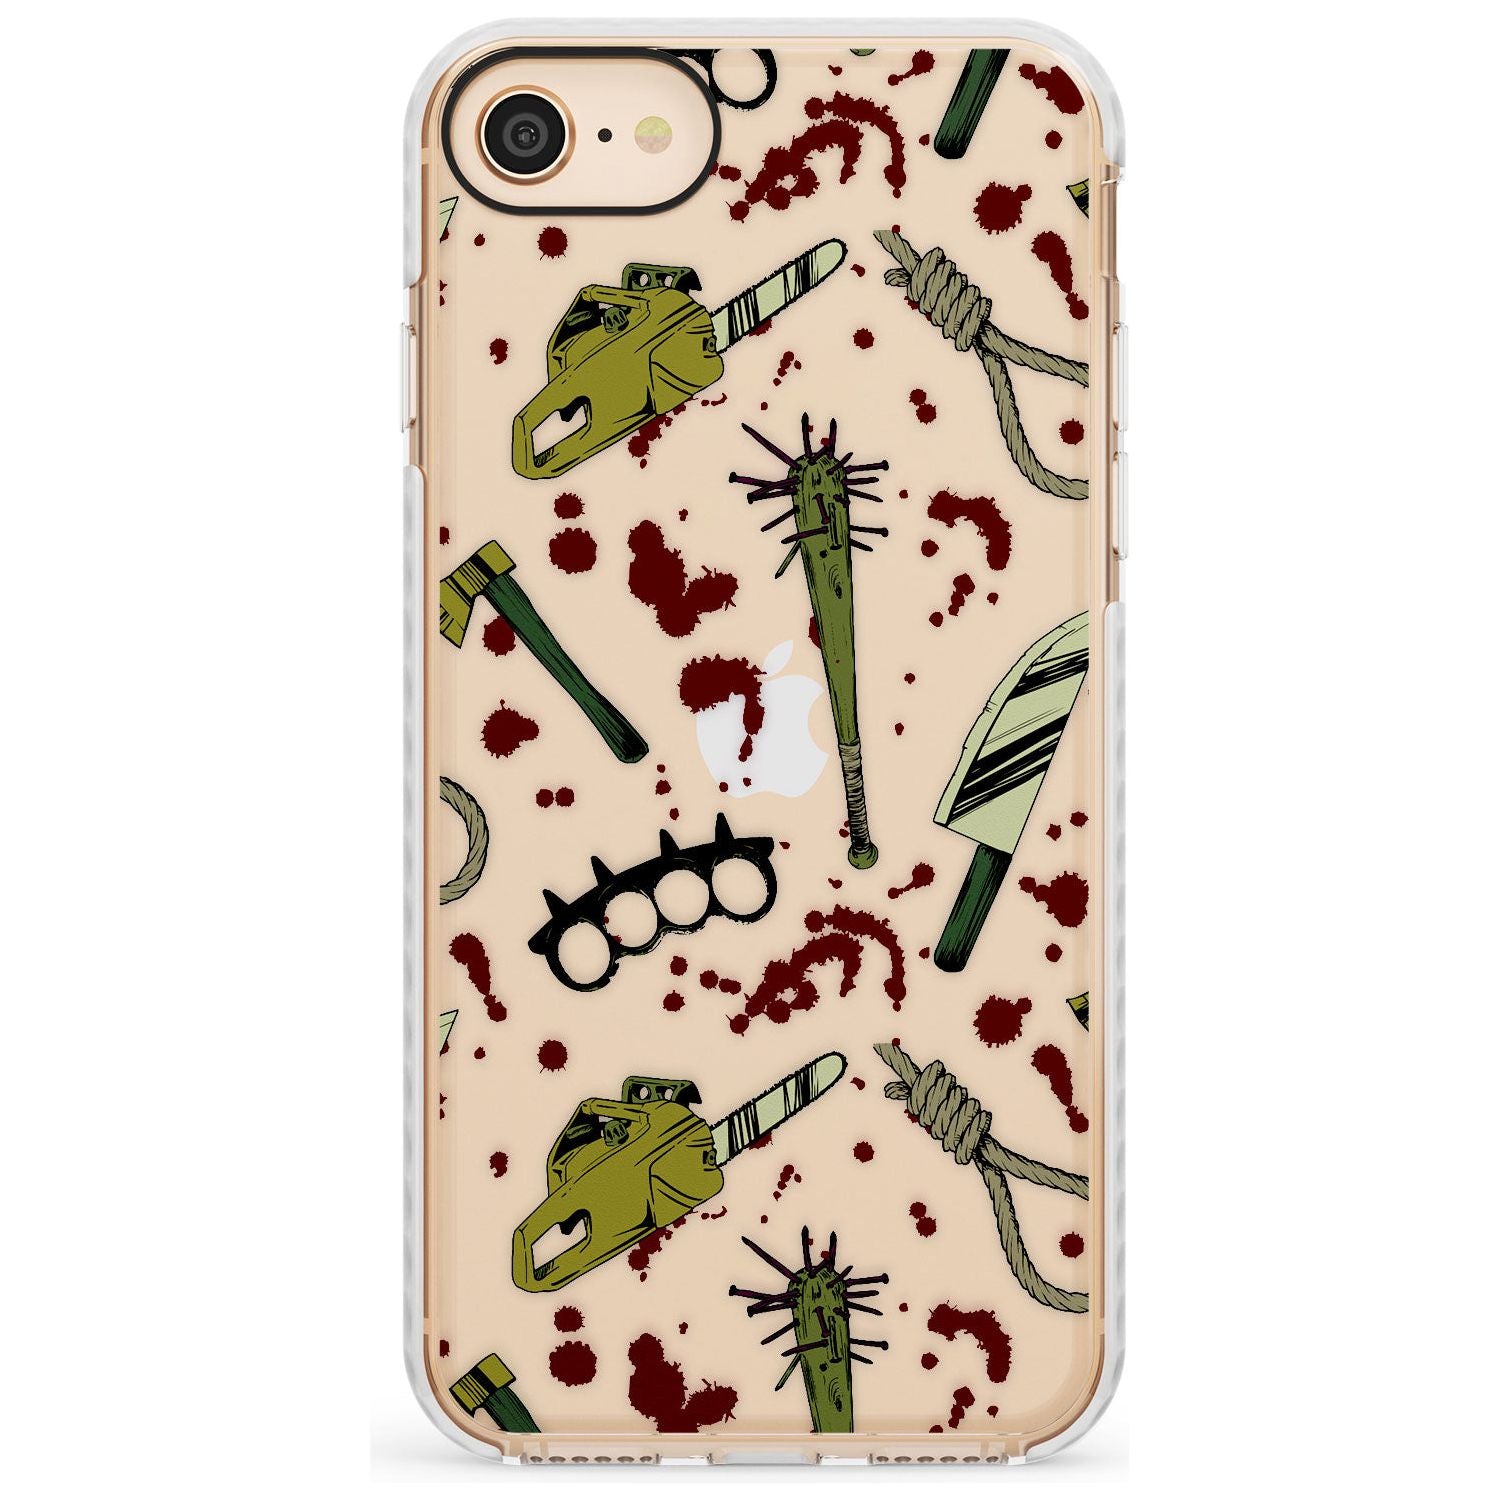 Movie Massacre Impact Phone Case for iPhone SE 8 7 Plus